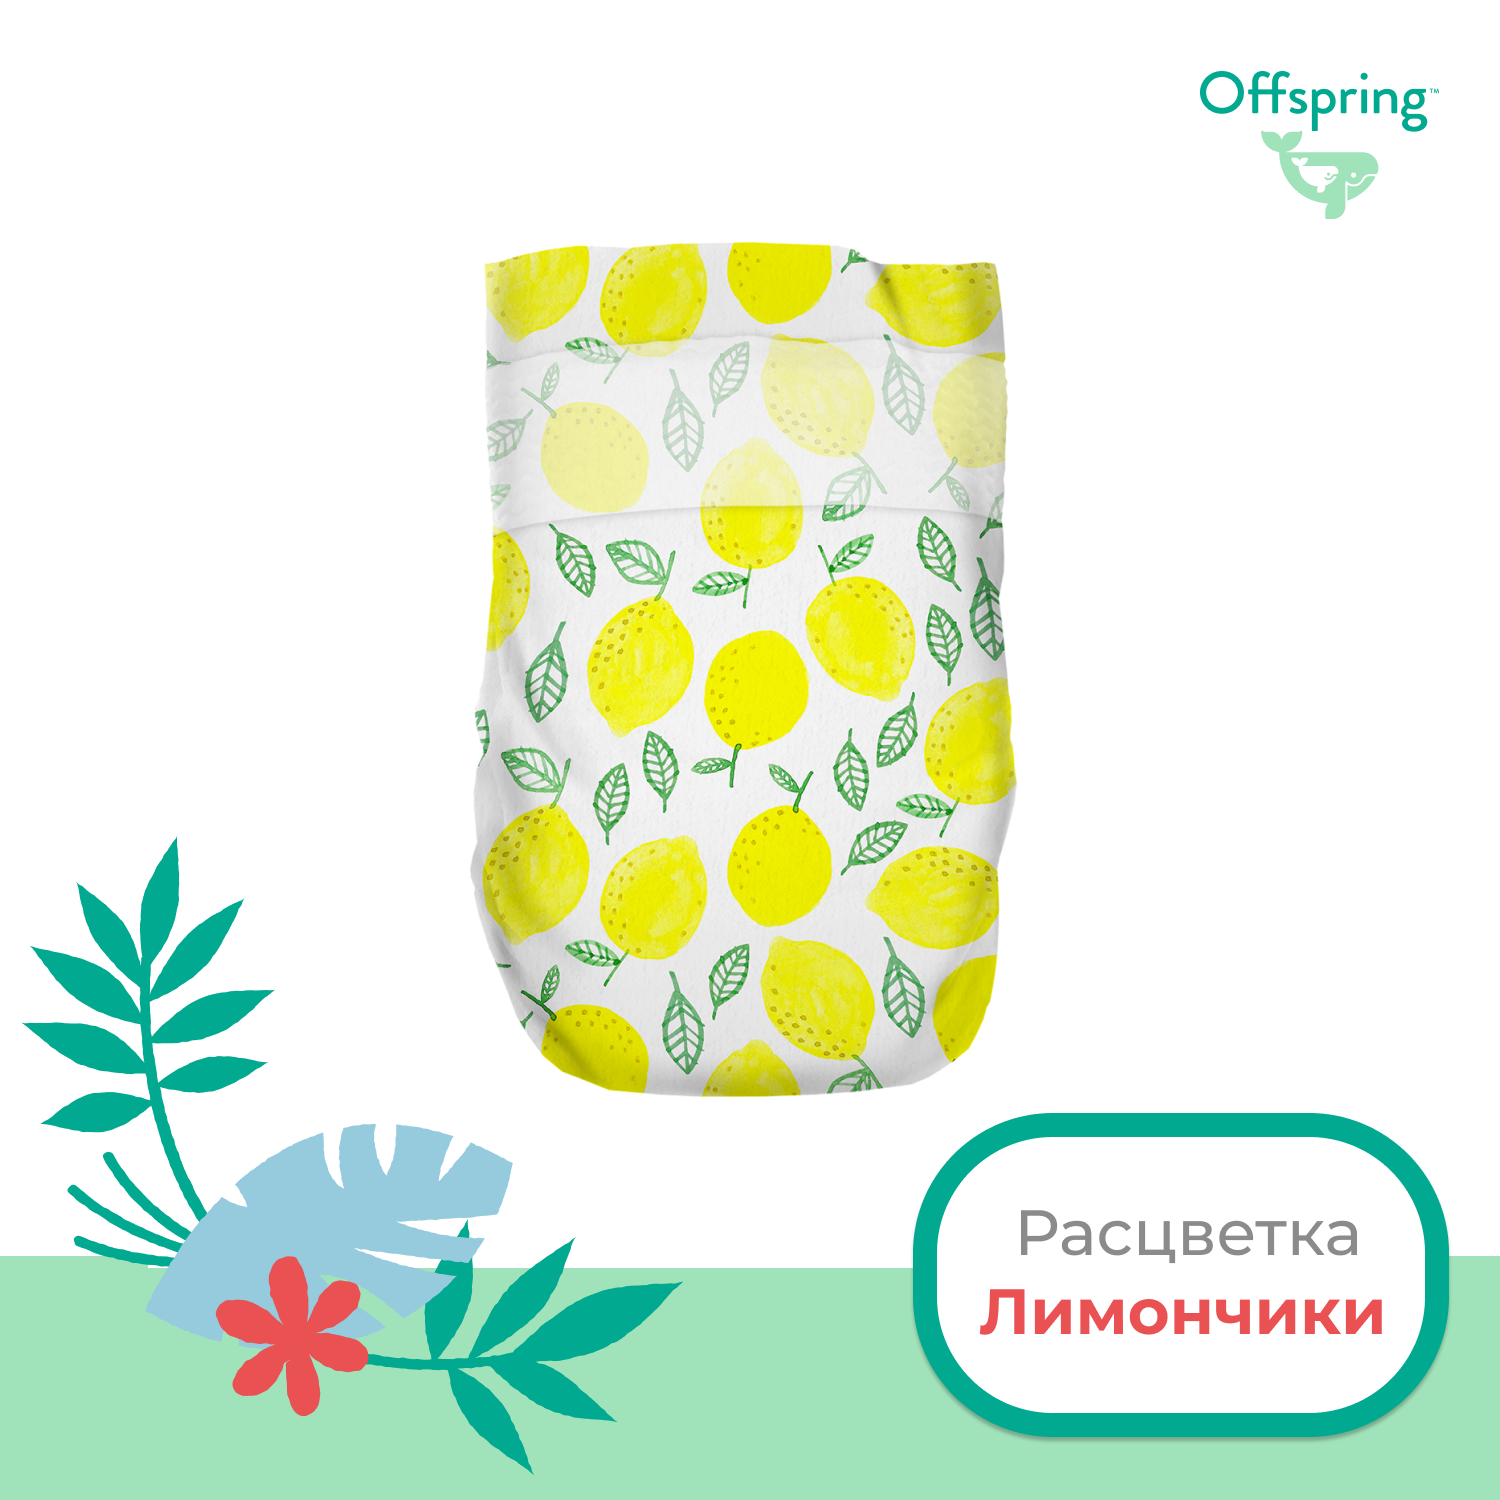 Подгузники Offspring M 6-10 кг 42 шт расцветка Лимоны - фото 2